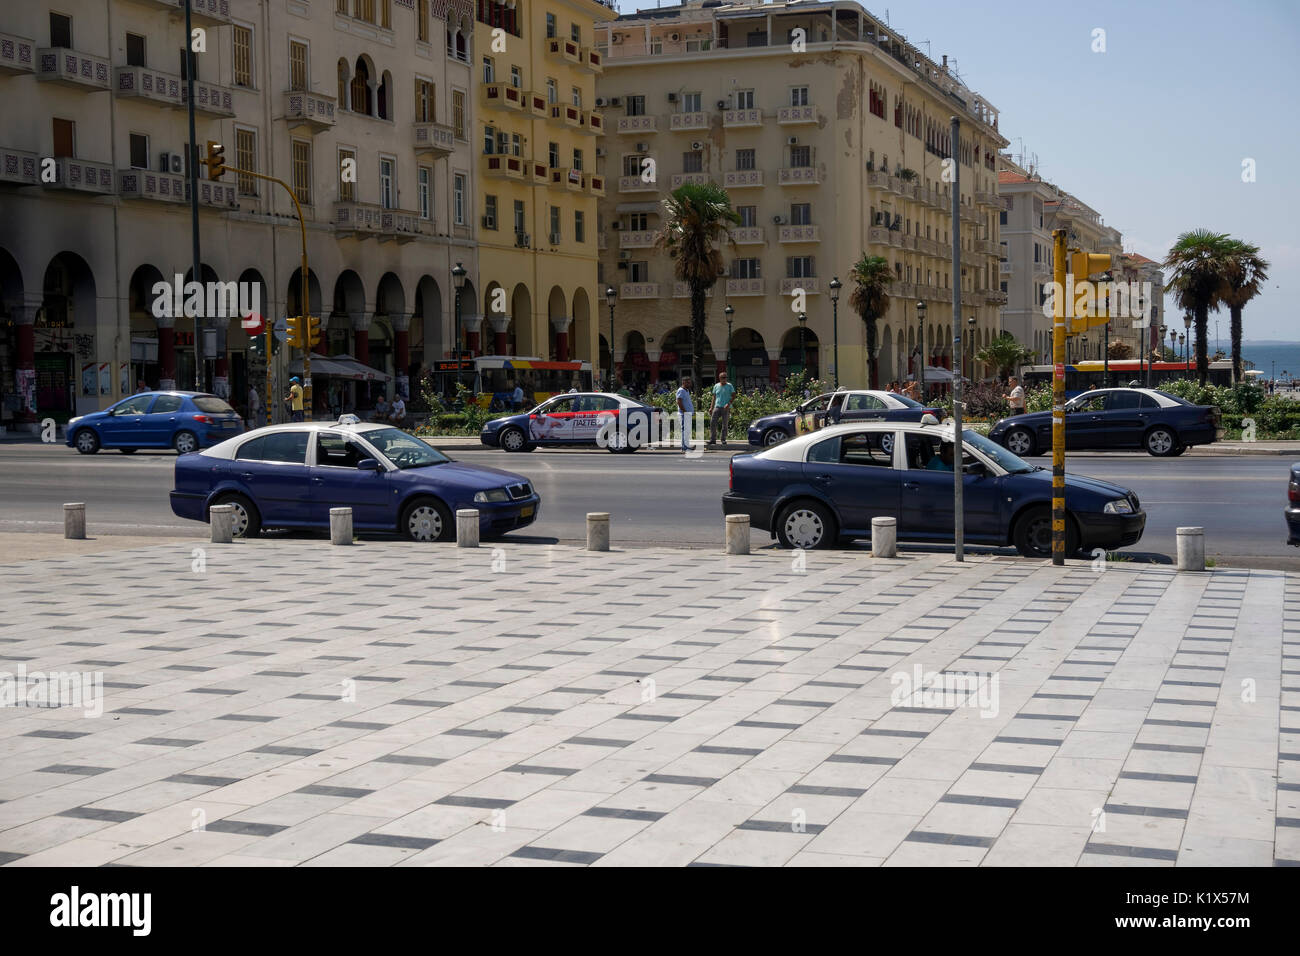 Thessalonique, Grèce des taxis à la place Aristotelous. Les taxis bleus et blancs avec les pilotes, stationné à arrêt de taxi à Egnatia street, zone d'Aristote. Banque D'Images